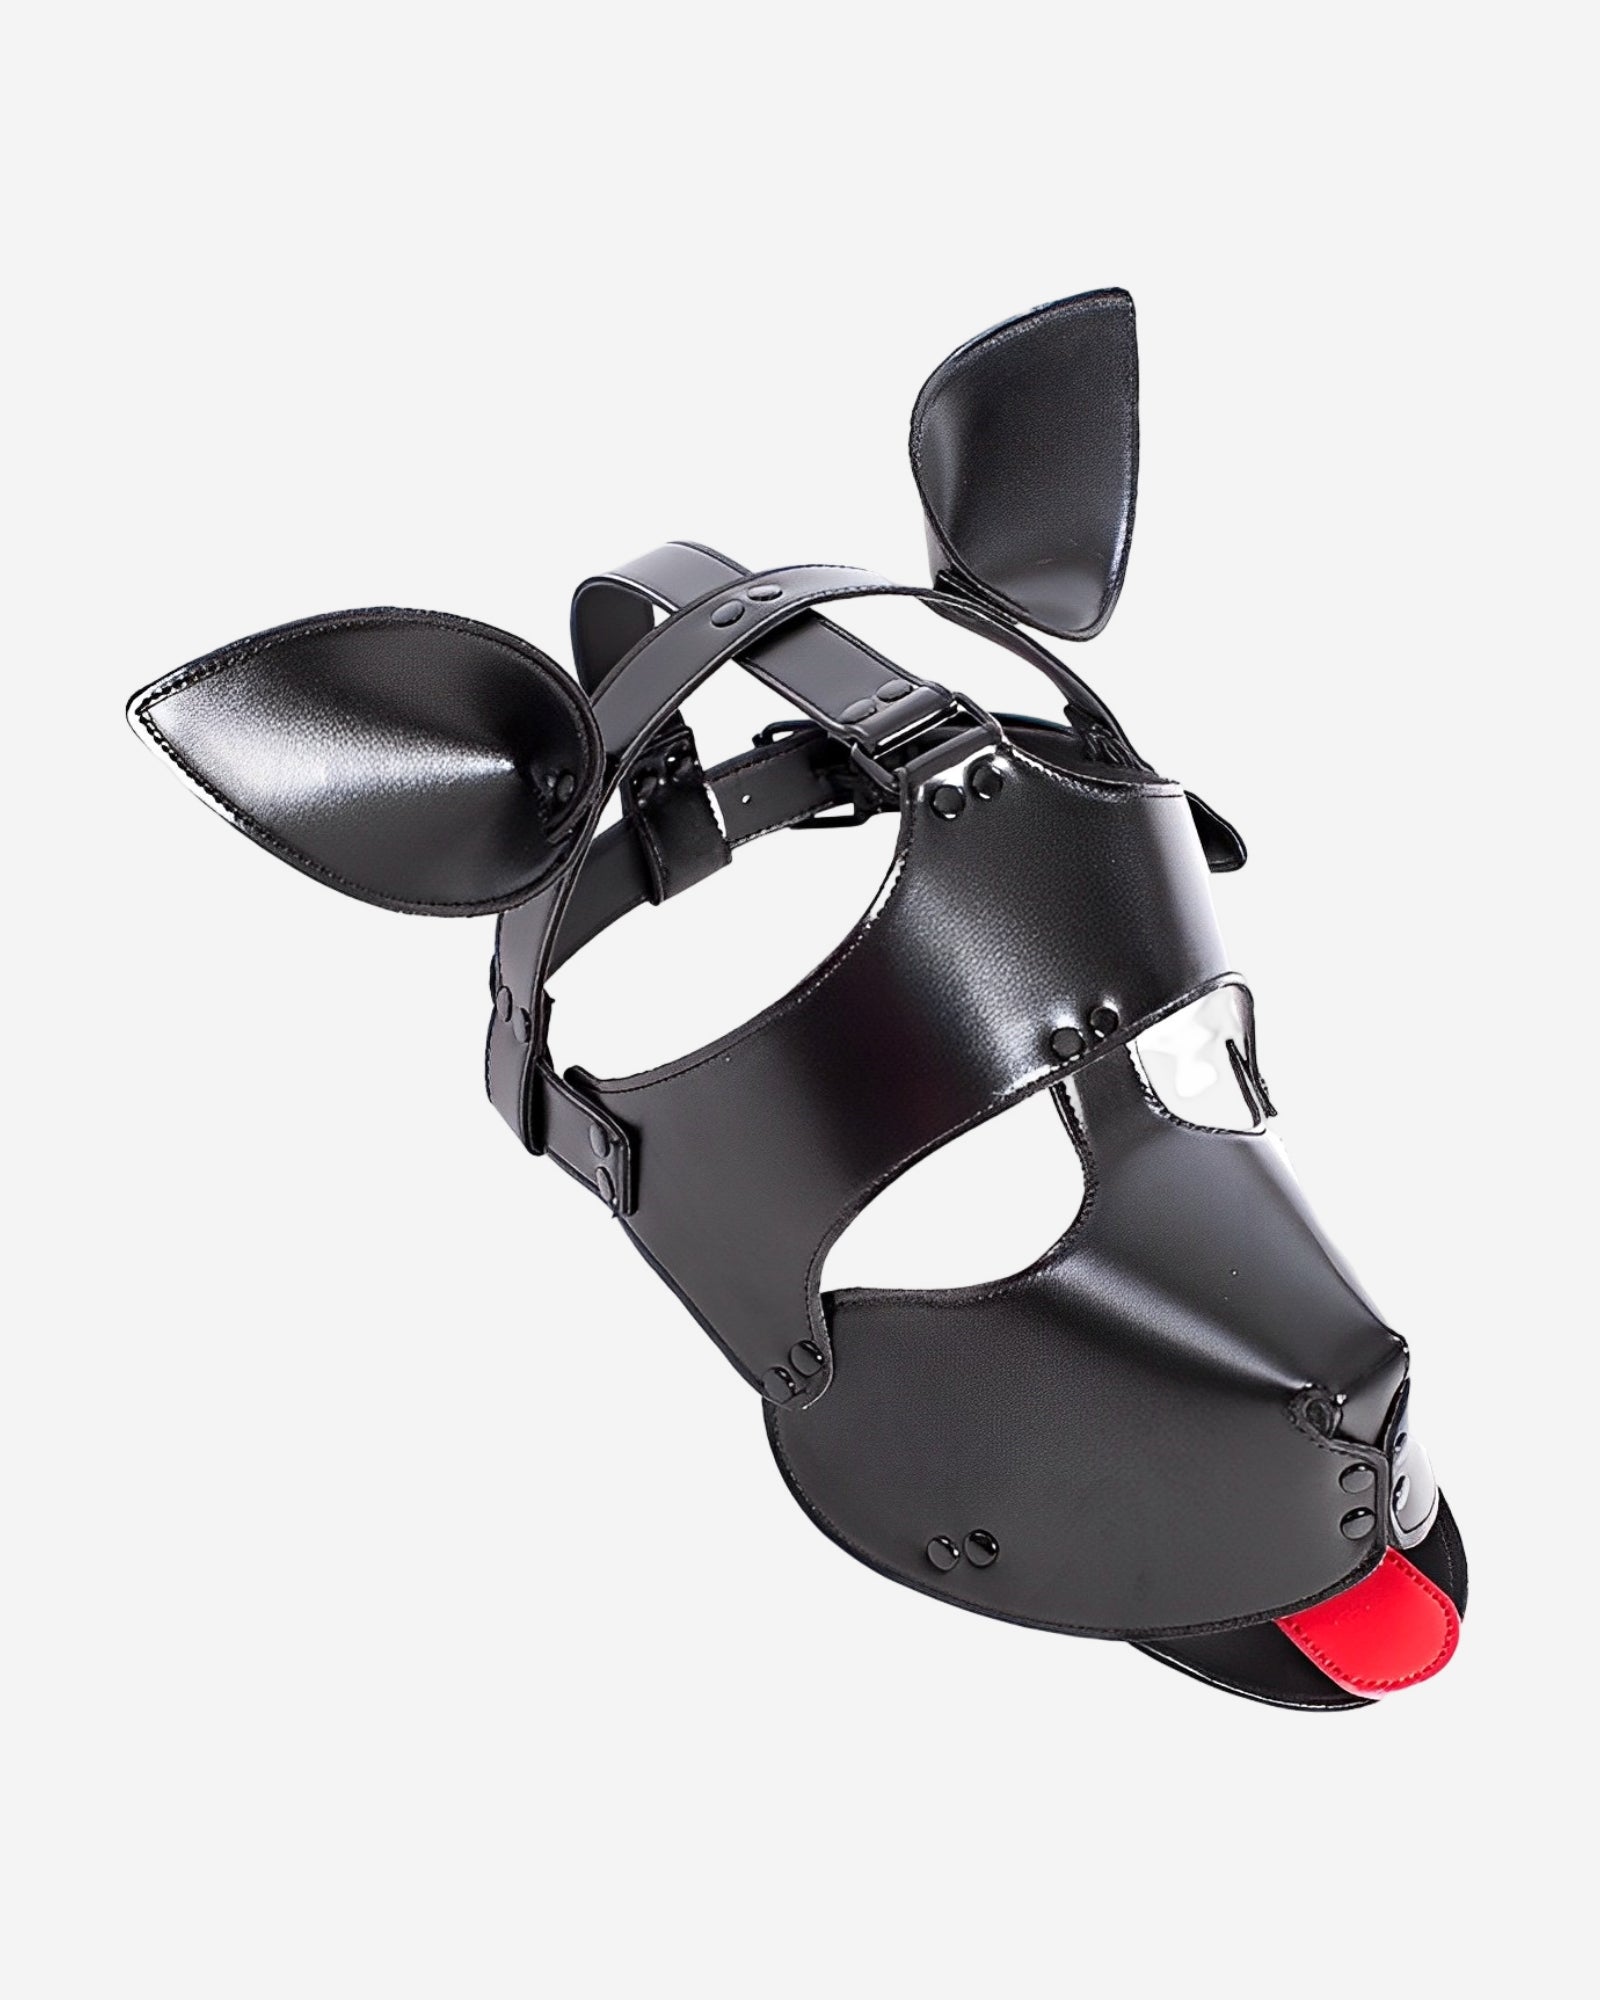 0 Vegan Leather Padded Dog Mask